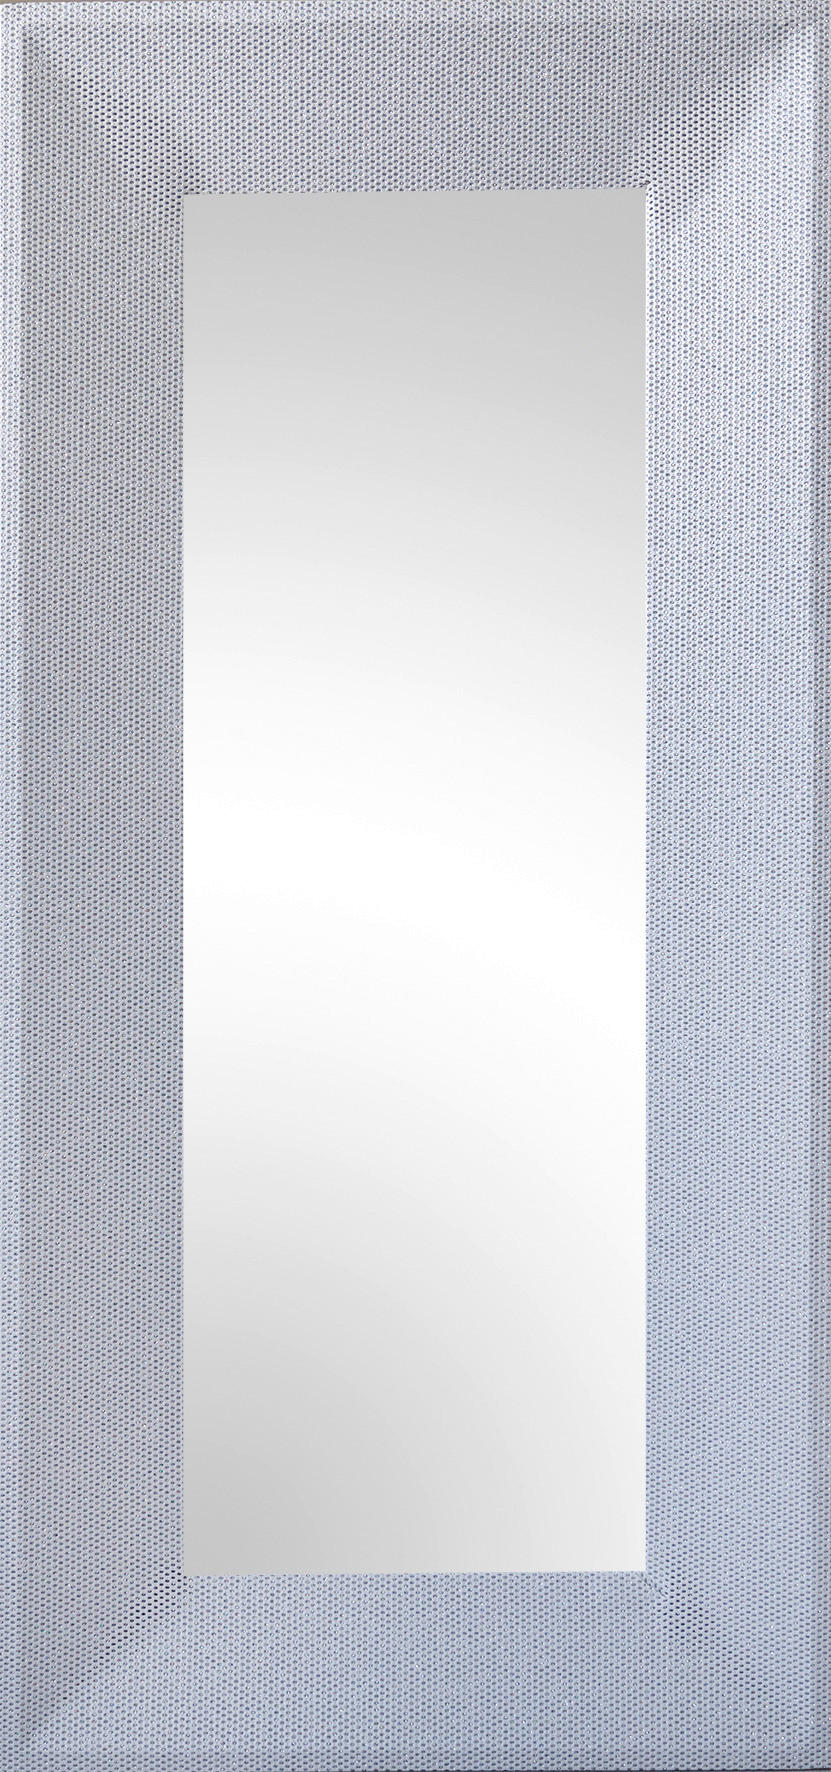 Rahmenspiegel Glitty silber glitzernd Optik B/H: ca. 65x140 cm Glitty - silber (65,00/140,00cm)